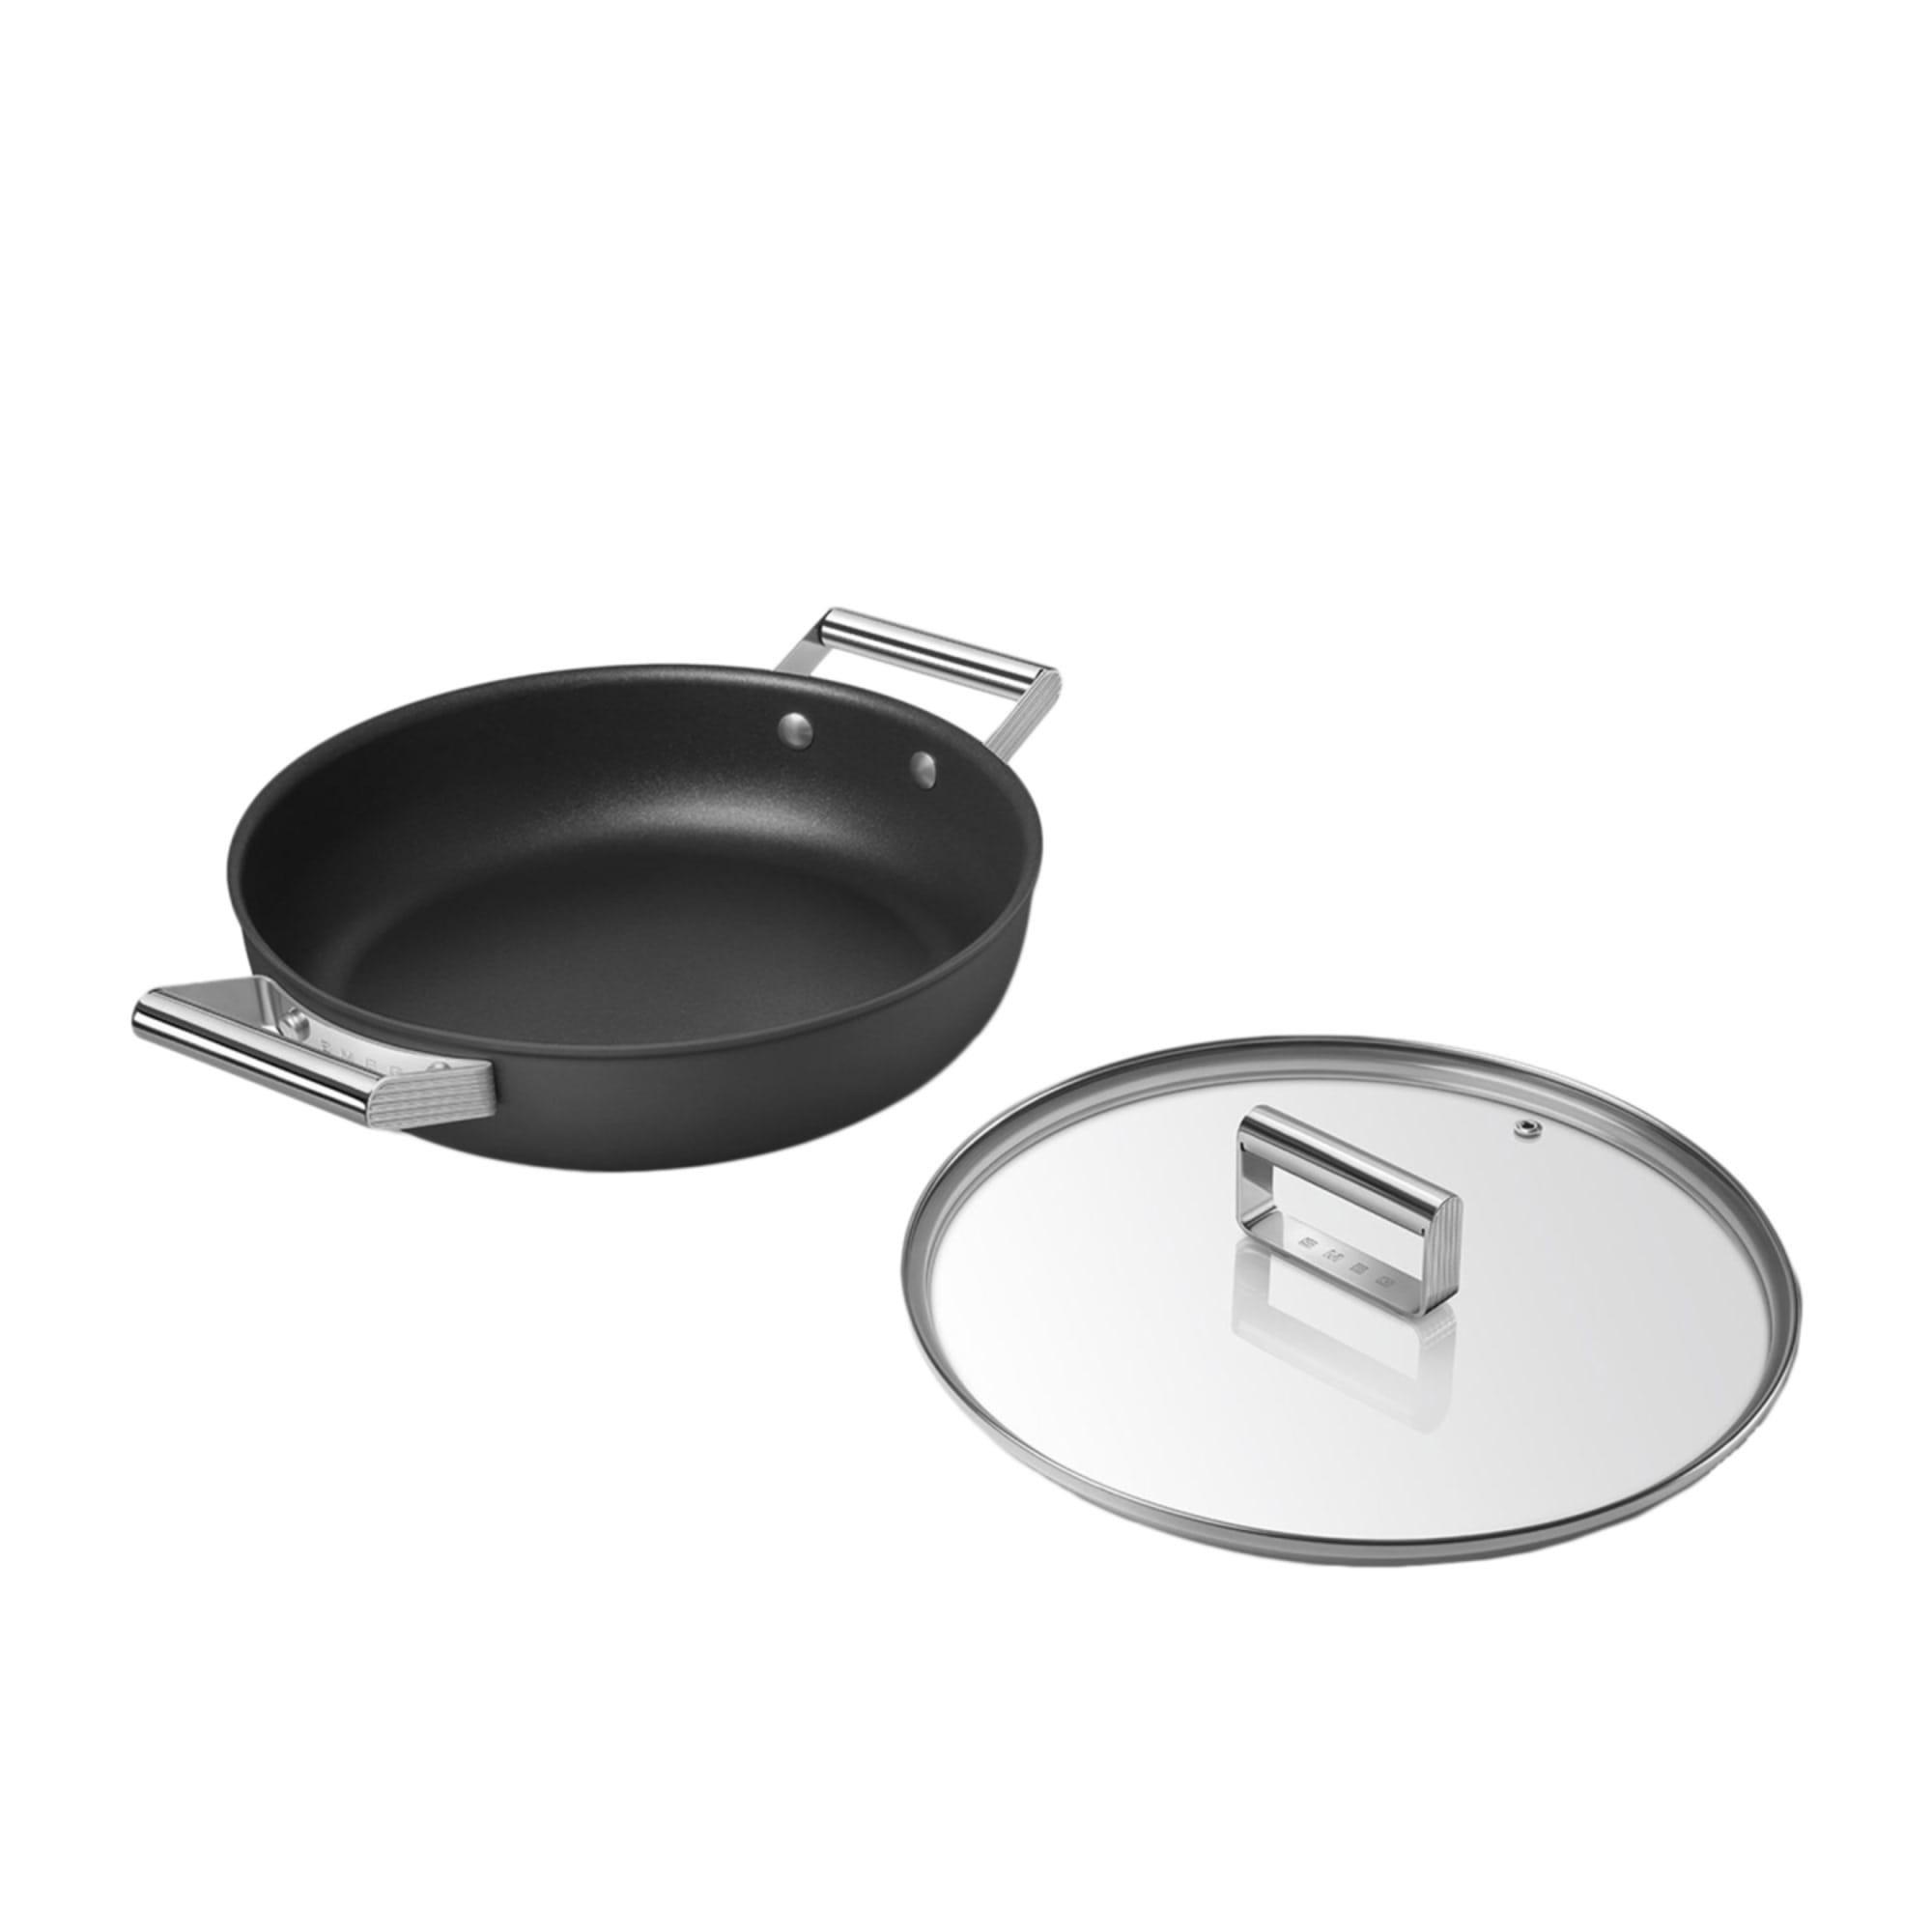 Smeg Non Stick Chef's Pan with Lid 28cm - 3.7L Black Image 4